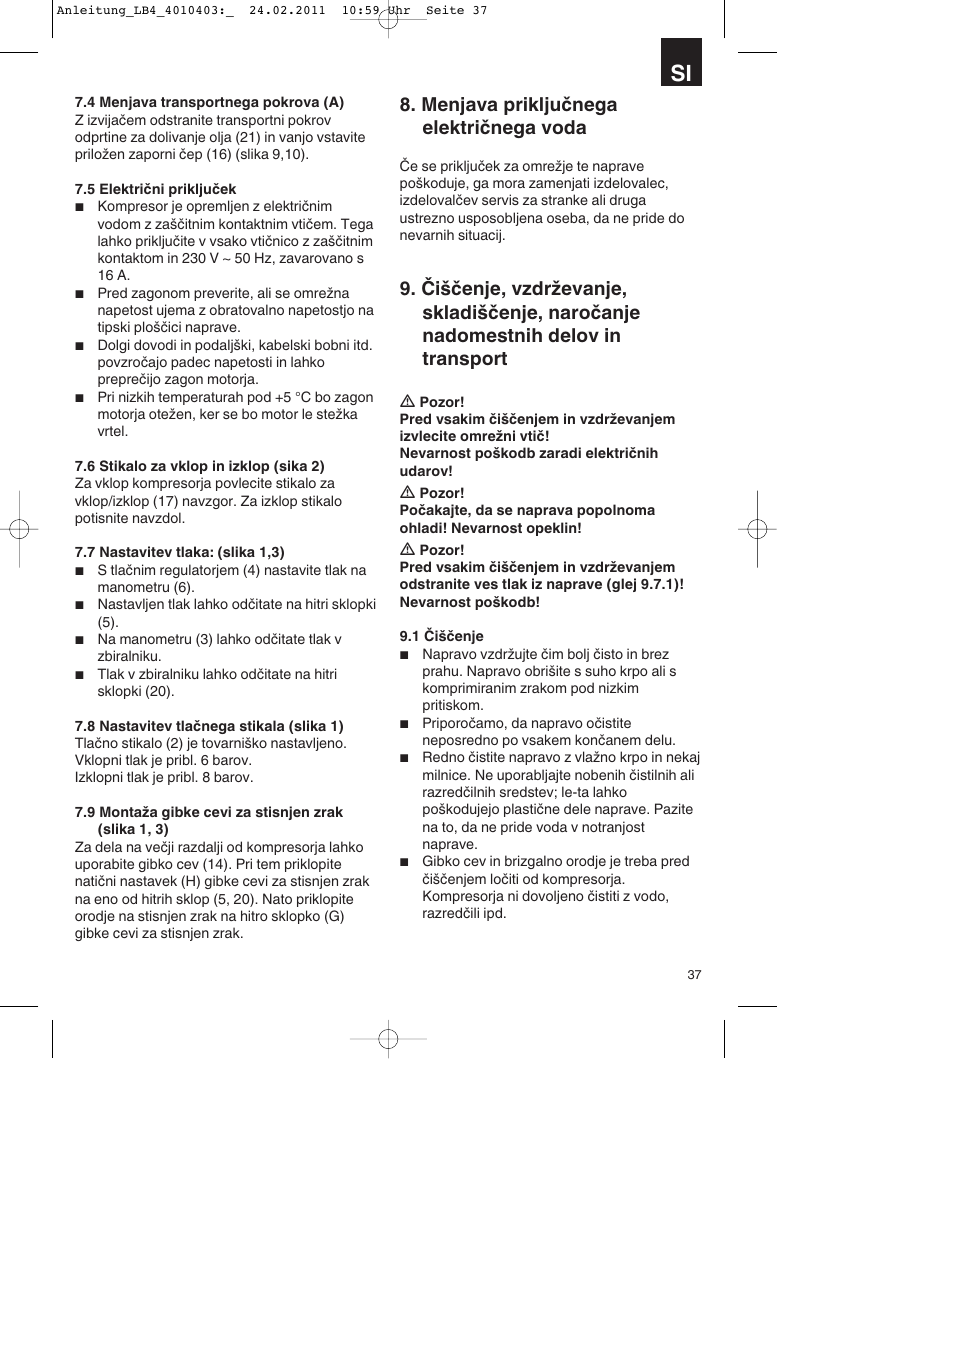 Menjava priključnega električnega voda | Parkside PKO 270 B2 User Manual |  Page 37 / 96 | Original mode